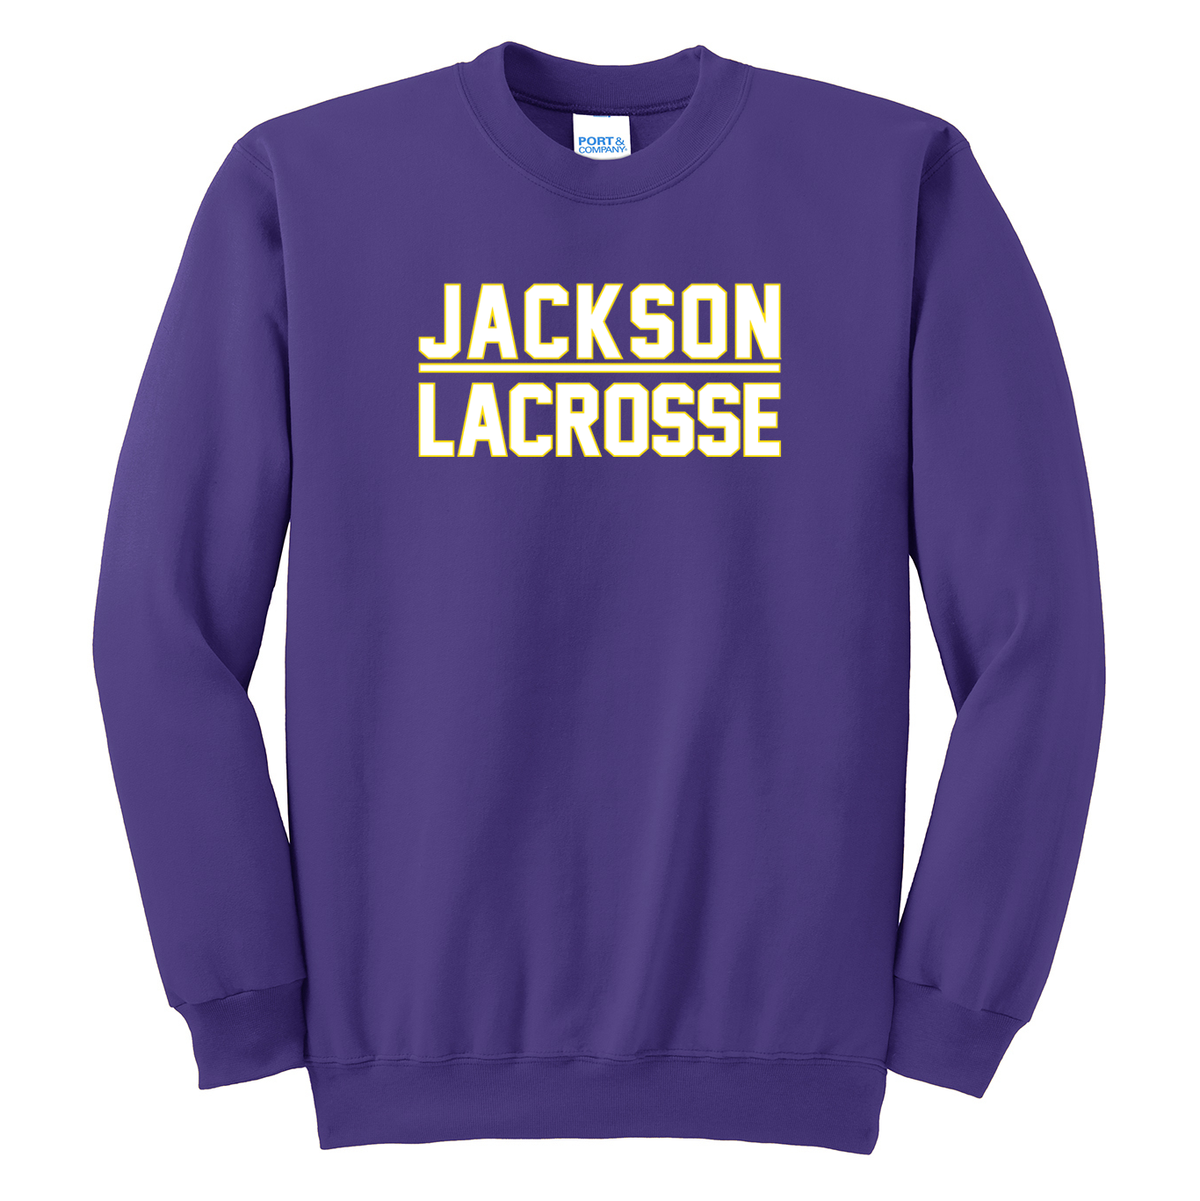 Jackson Lacrosse Crew Neck Sweater